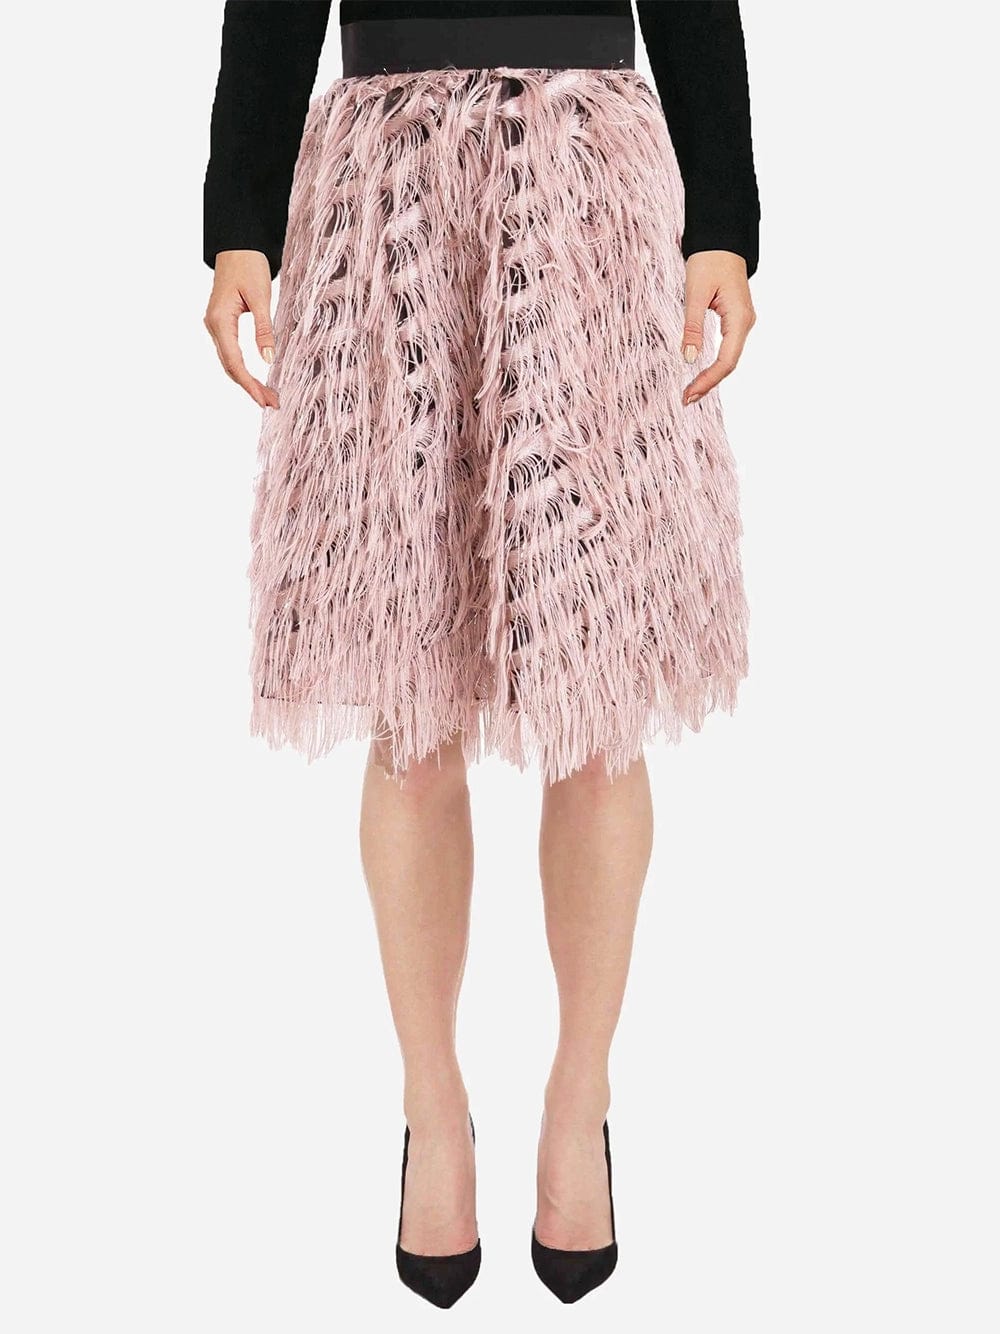 Dolce & Gabbana Metallic High-Waist Pencil Skirt